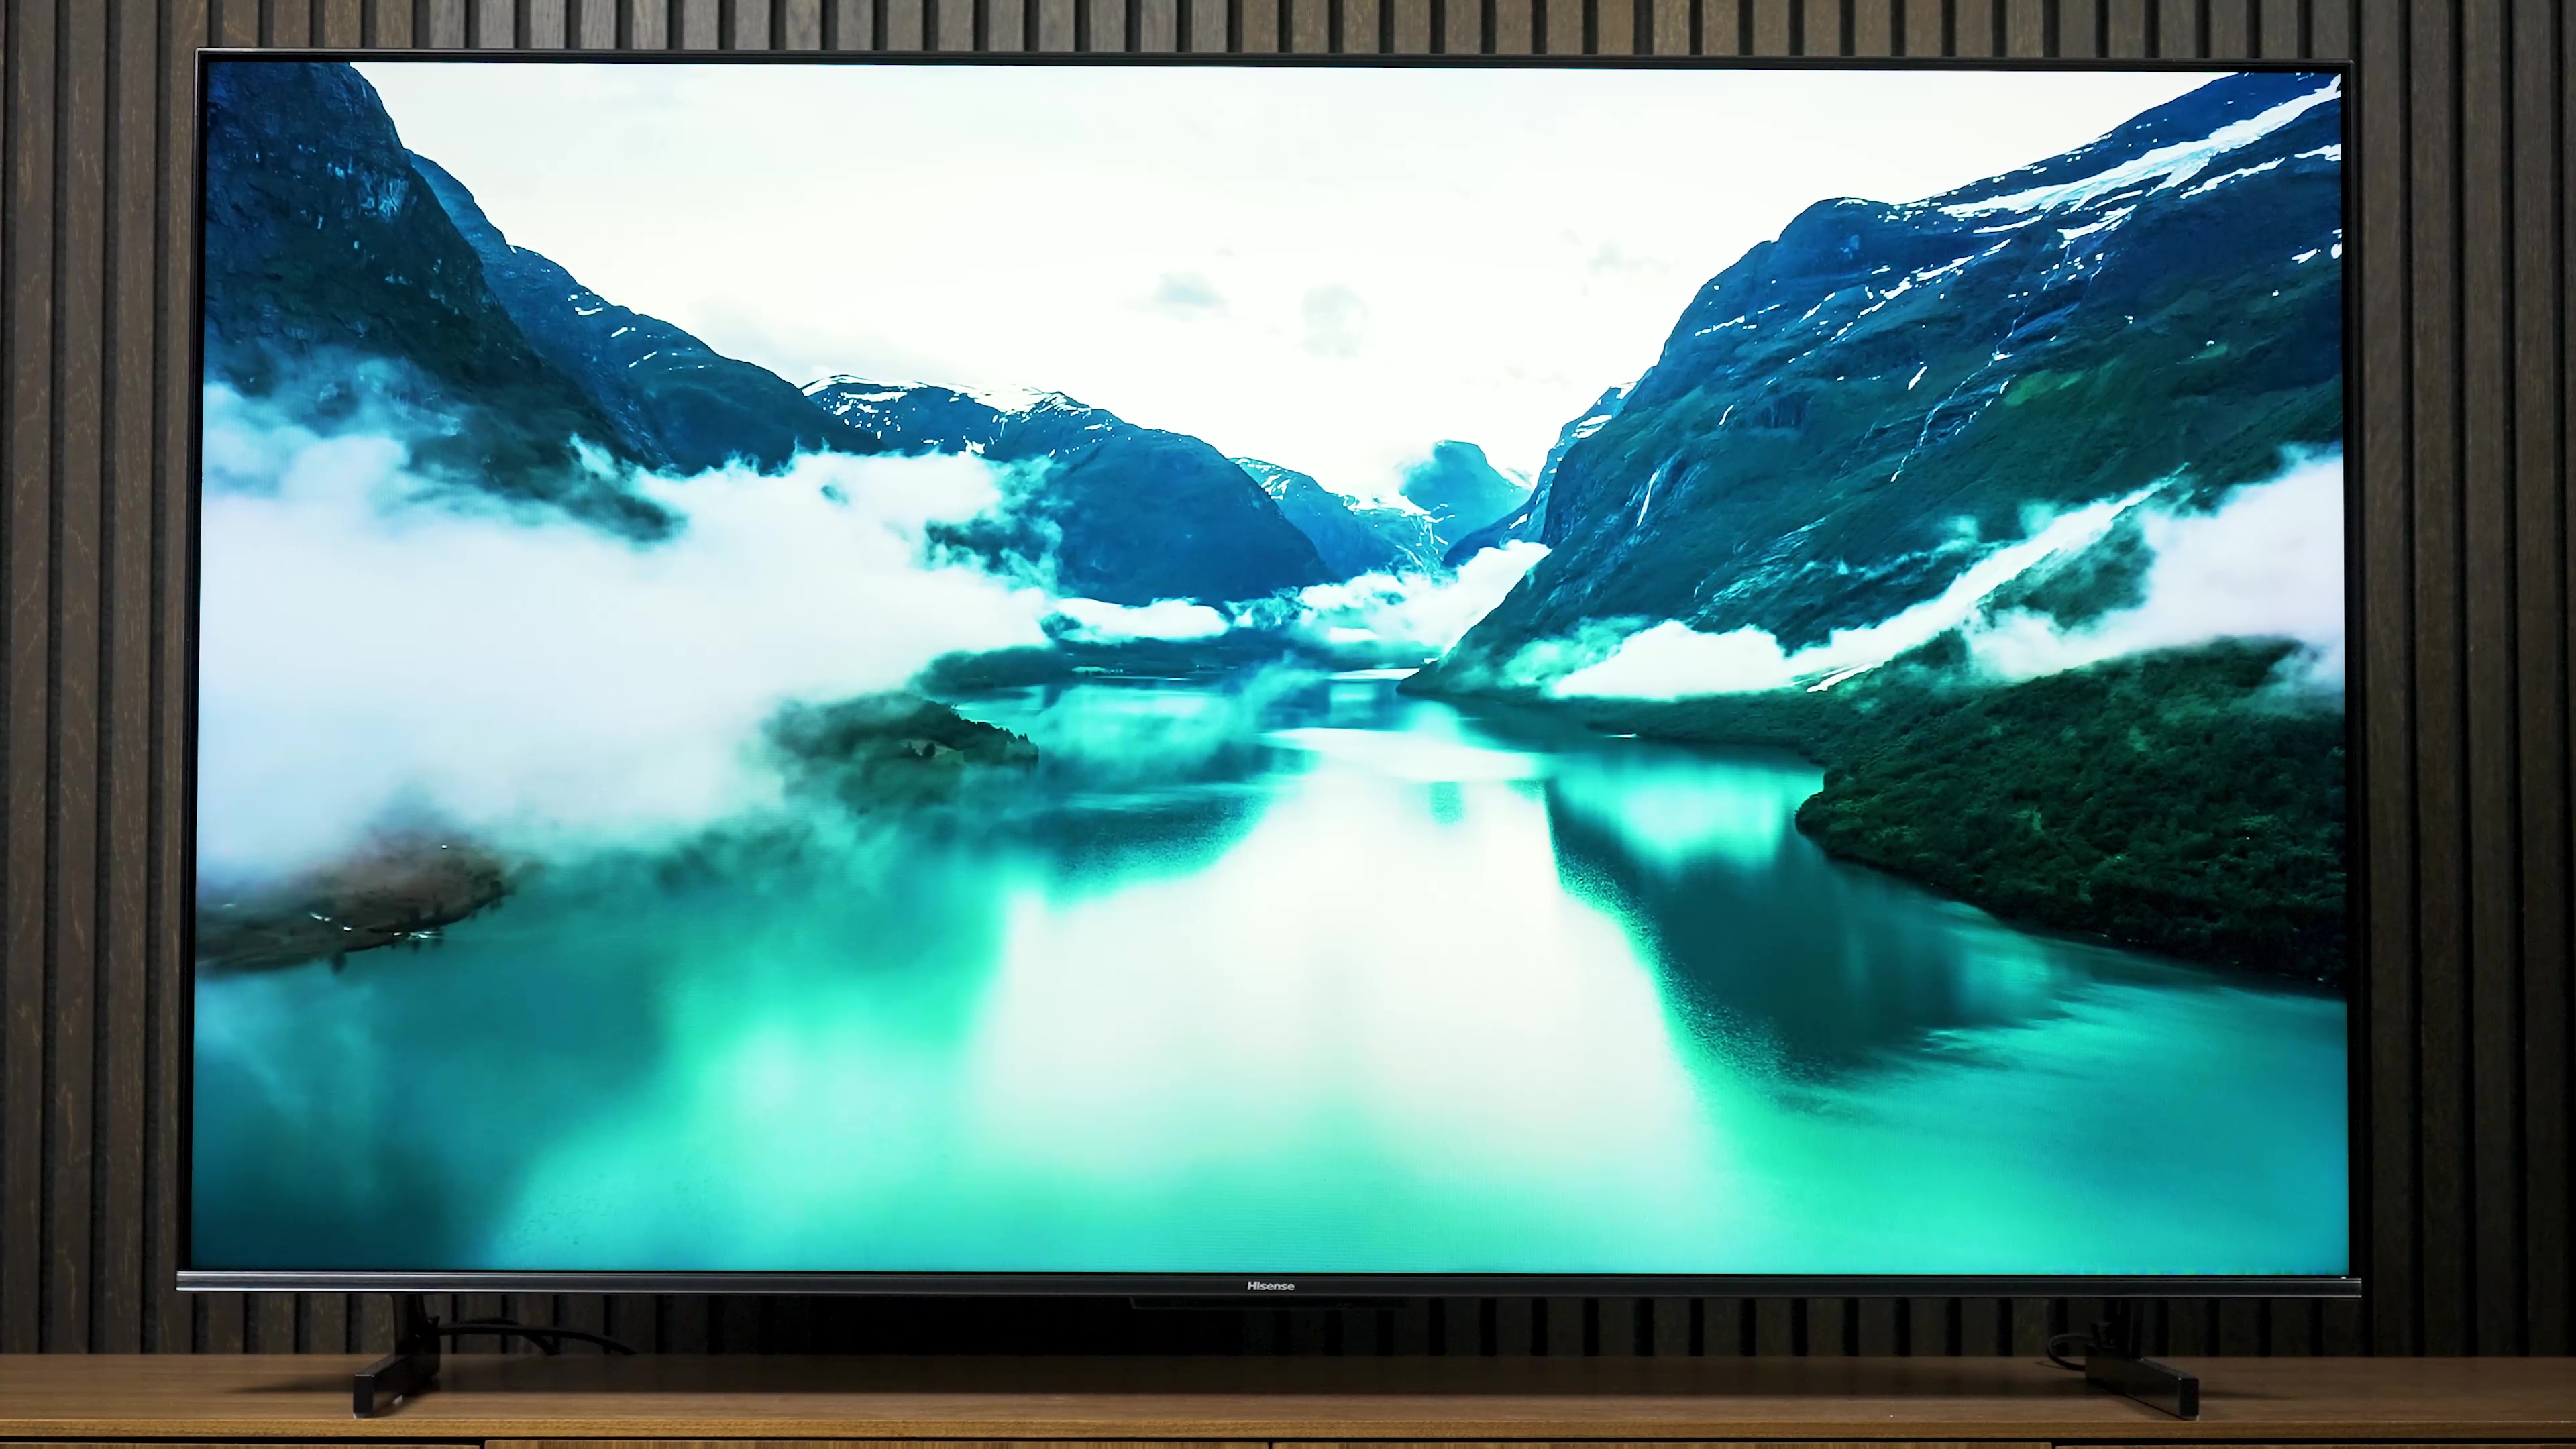 Hisense U7K 4K Mini-LED TV Unboxing & Impressions! 